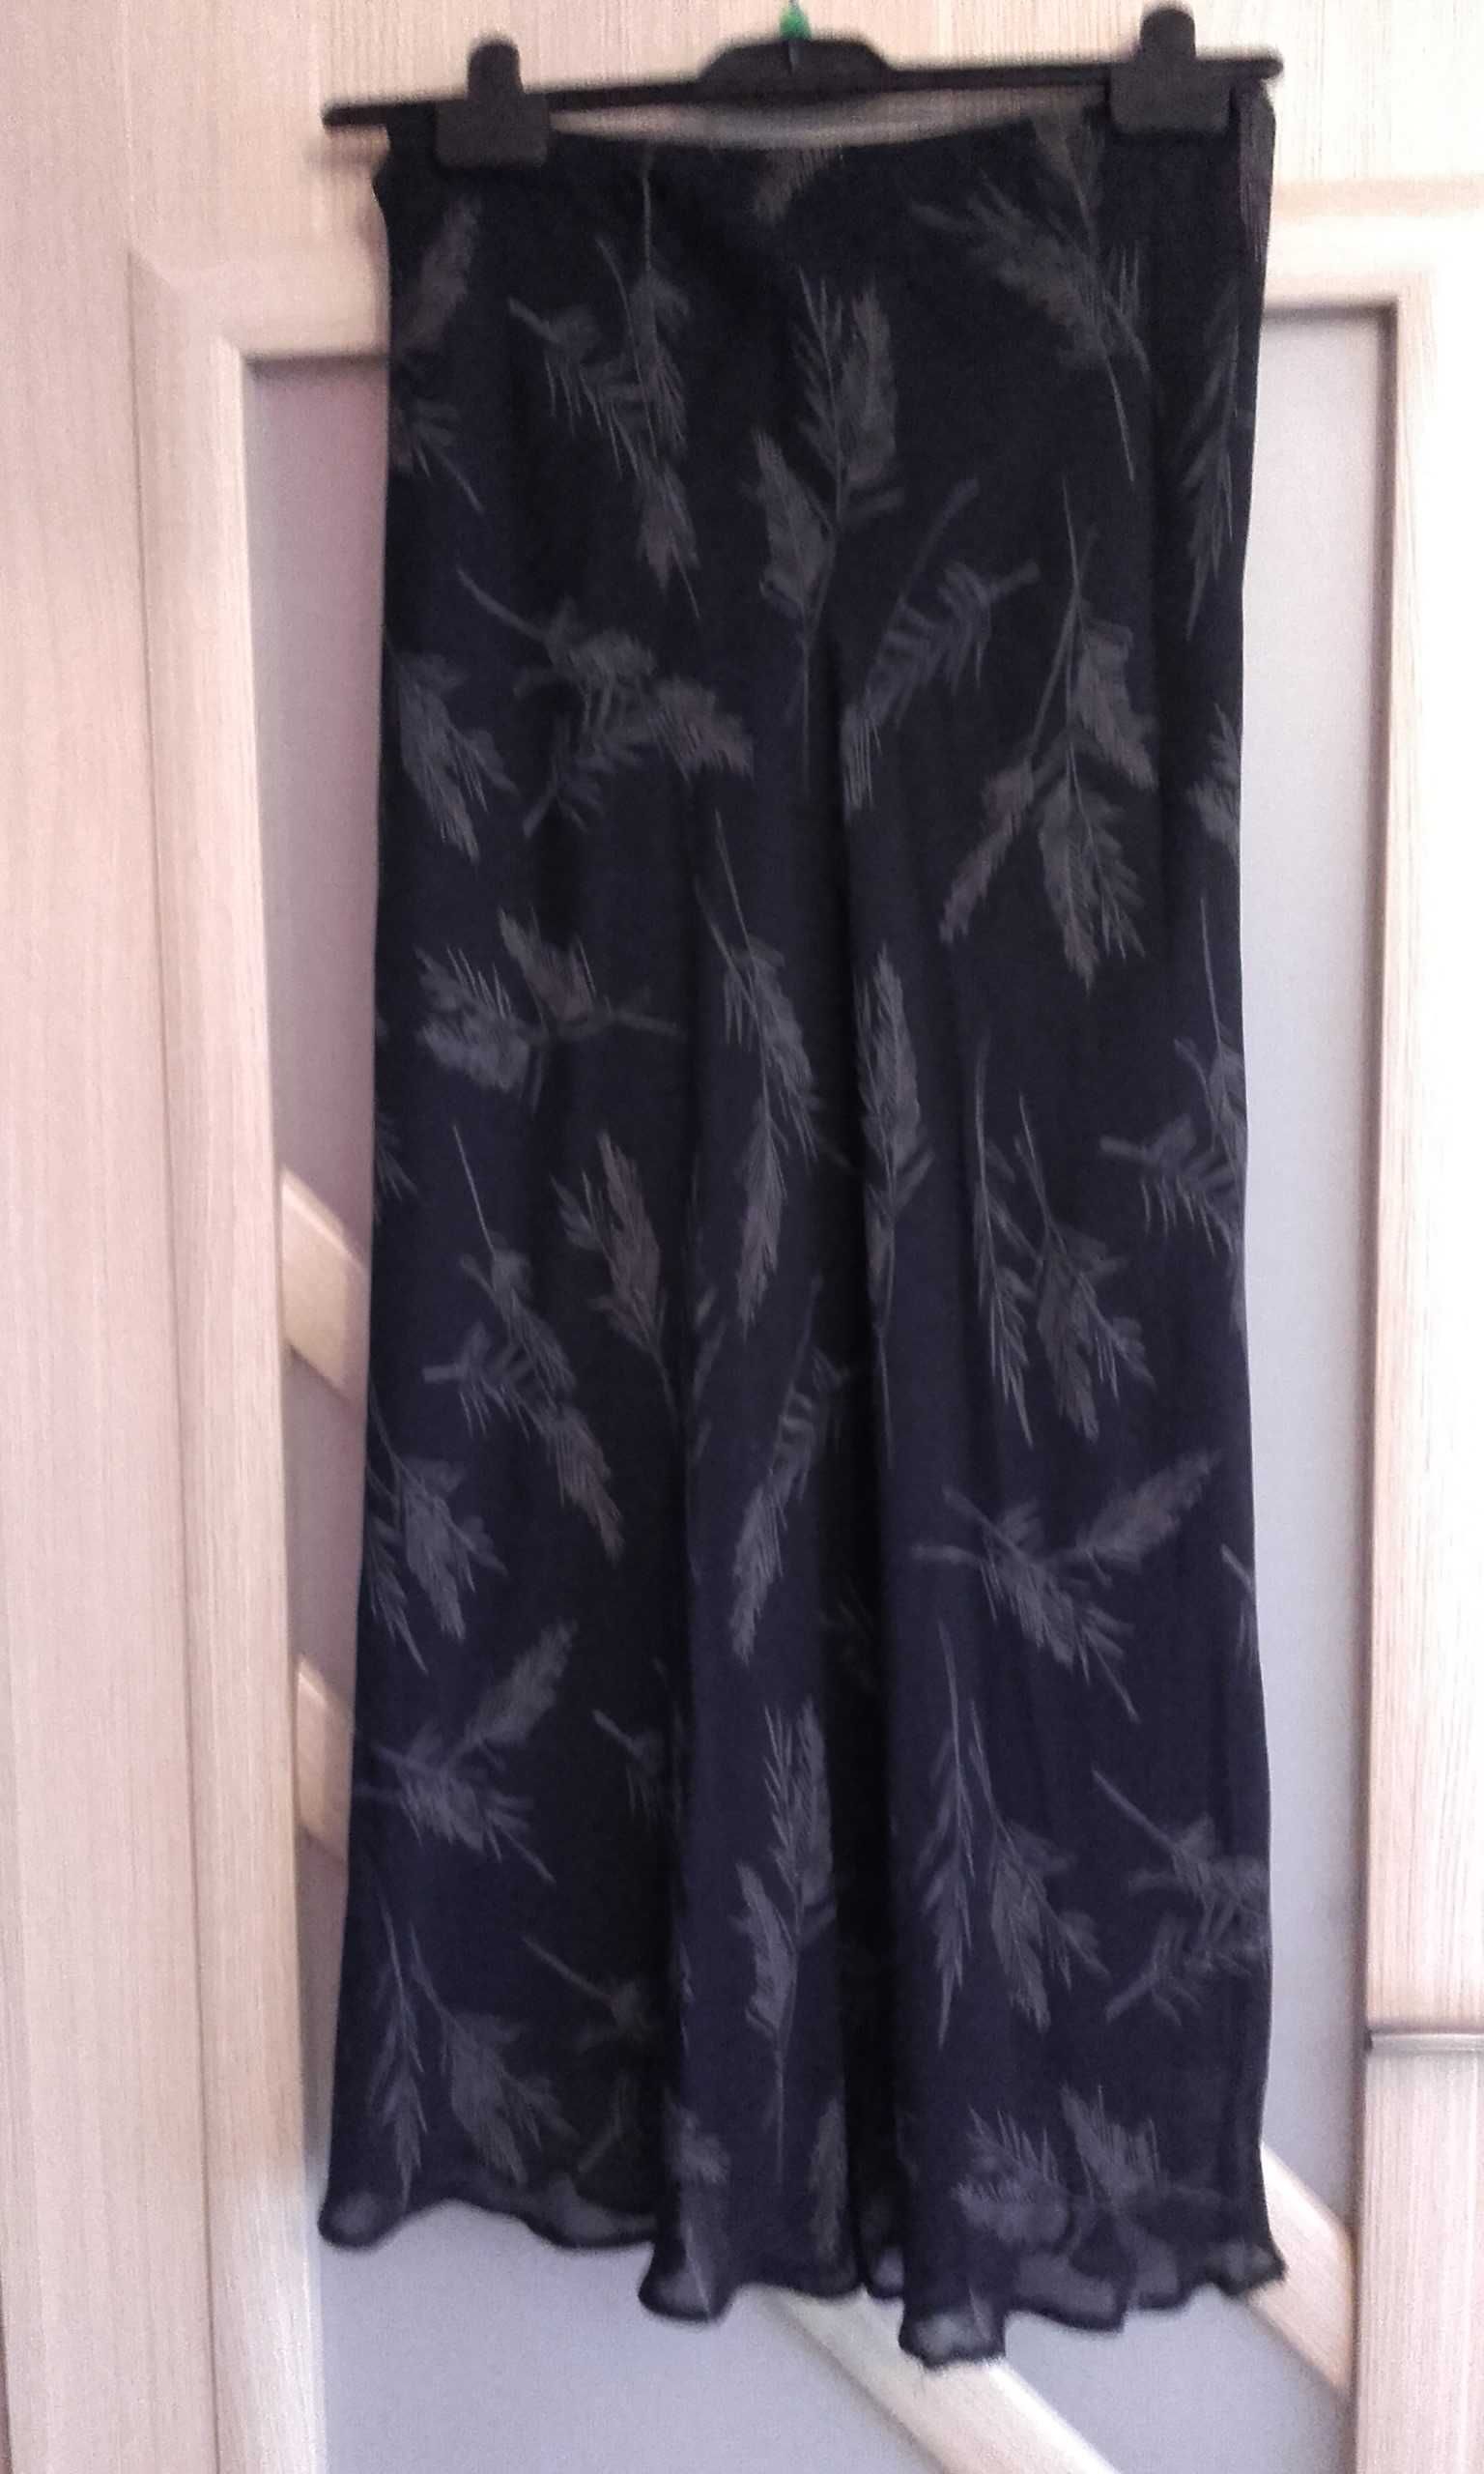 Spódnica czarno-liliowa, Marks&Spencer , L